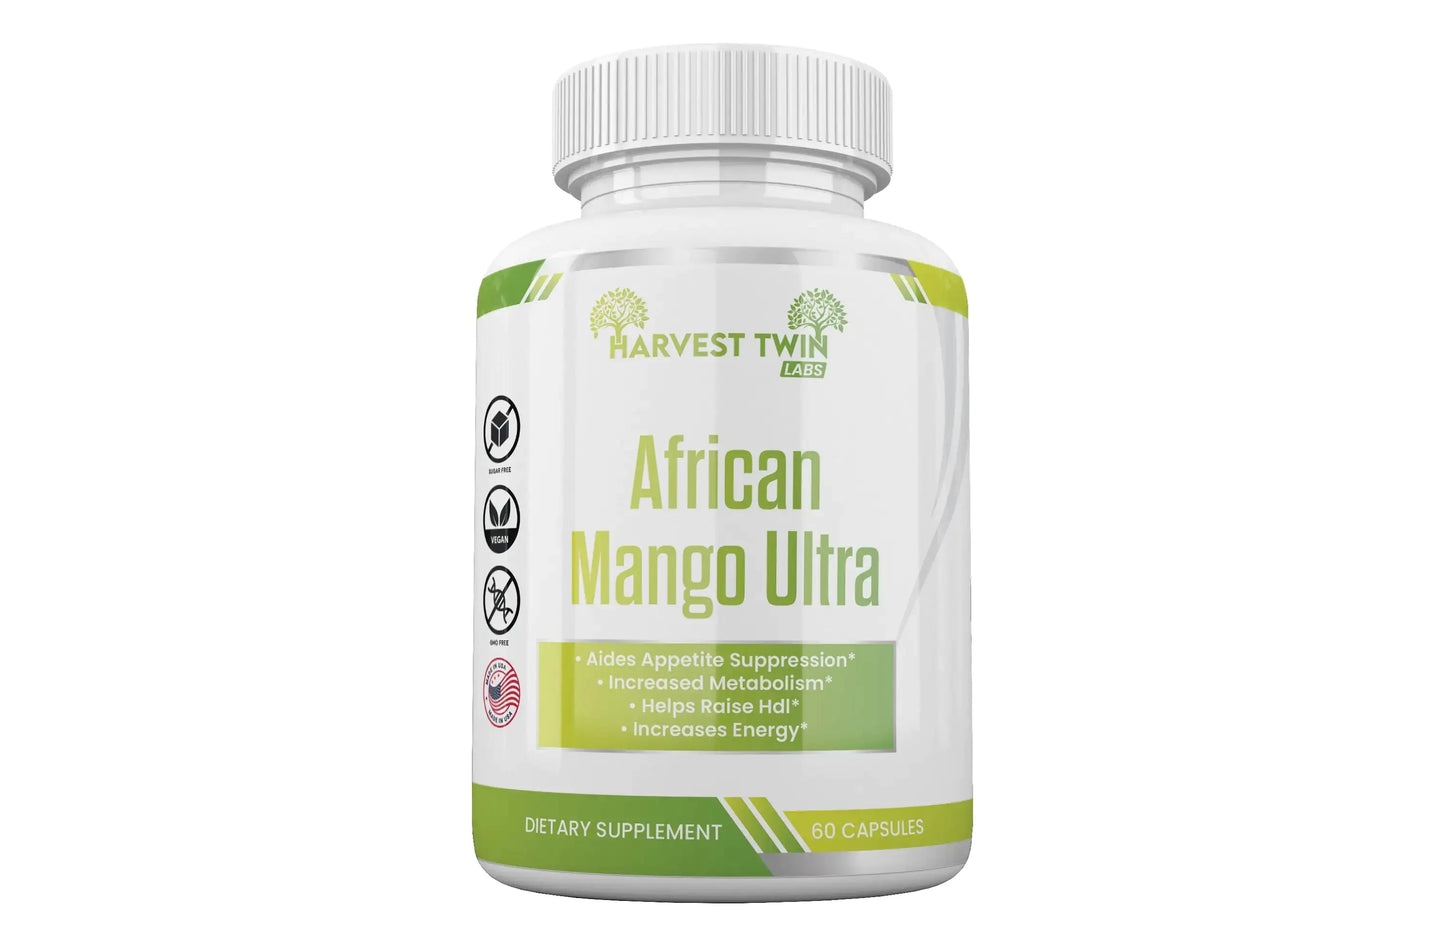 African Mango Ultra Weight Loss Supplement